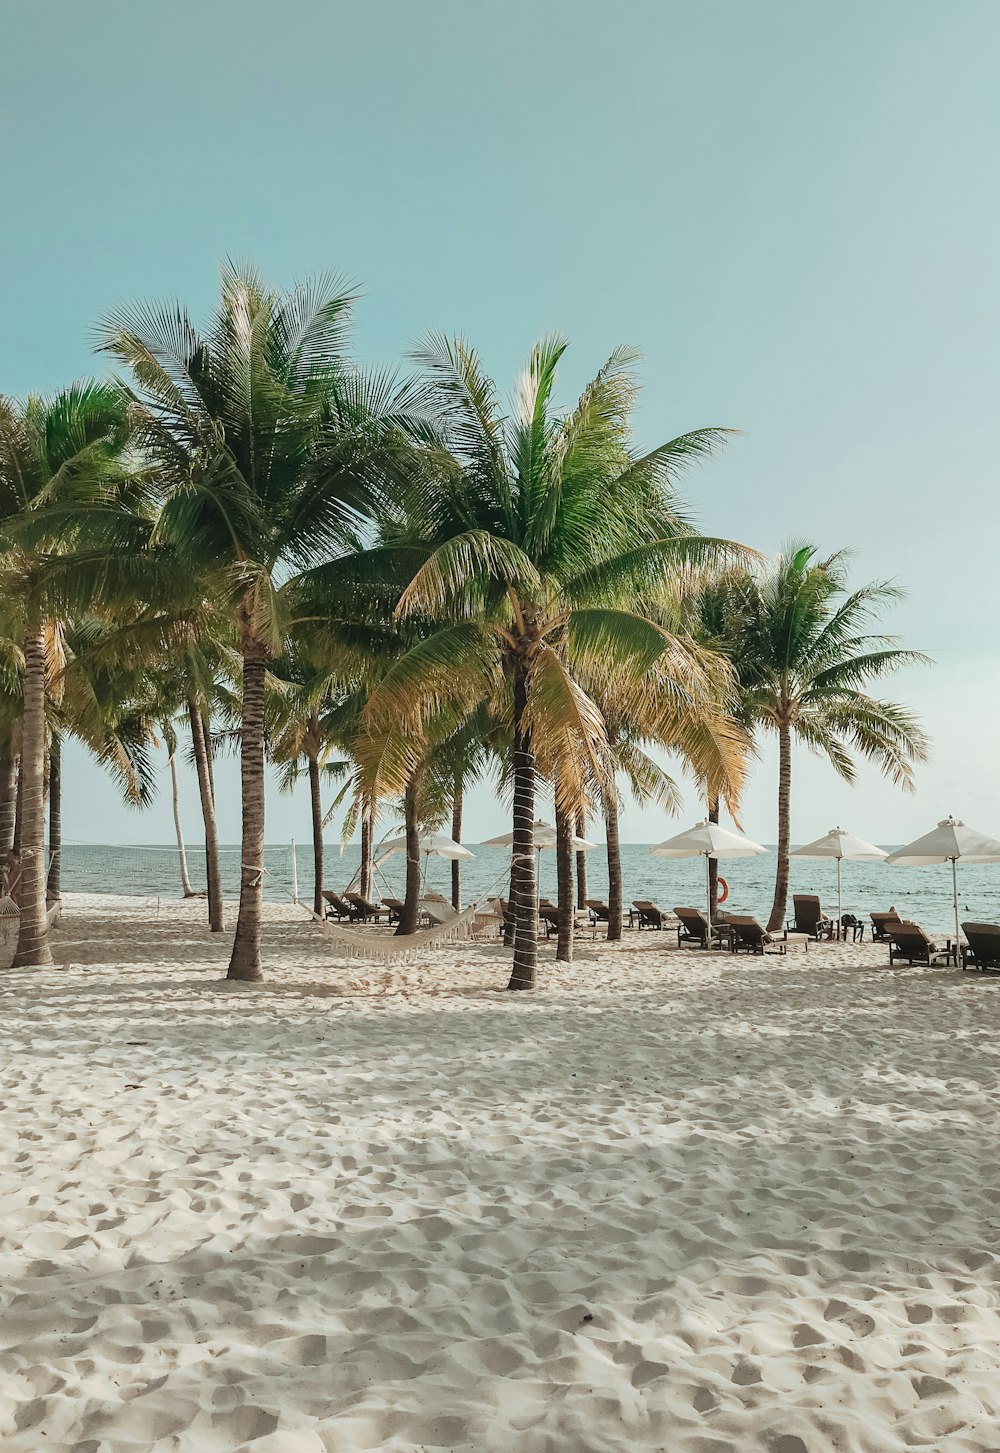 해변에 있는 코코넛 나무 사진